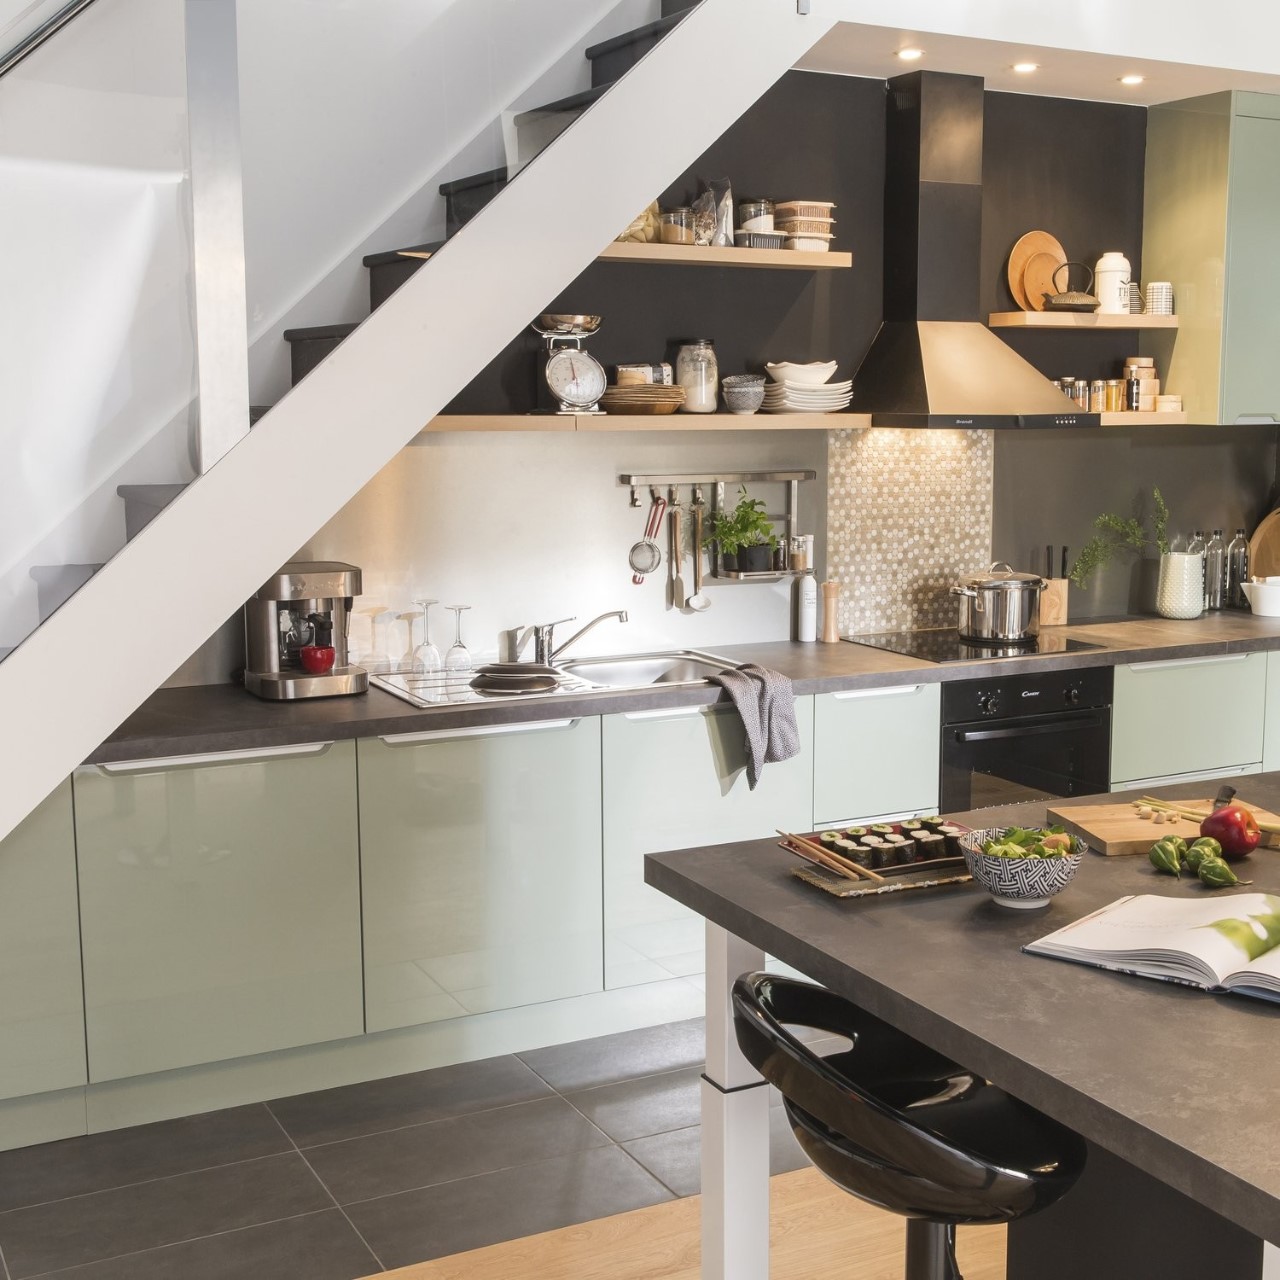 Thiết kế tủ bếp màu xanh nhã nhặn với nhiều ngăn kệ đựng vật dụng nhà bếp tiện nghi